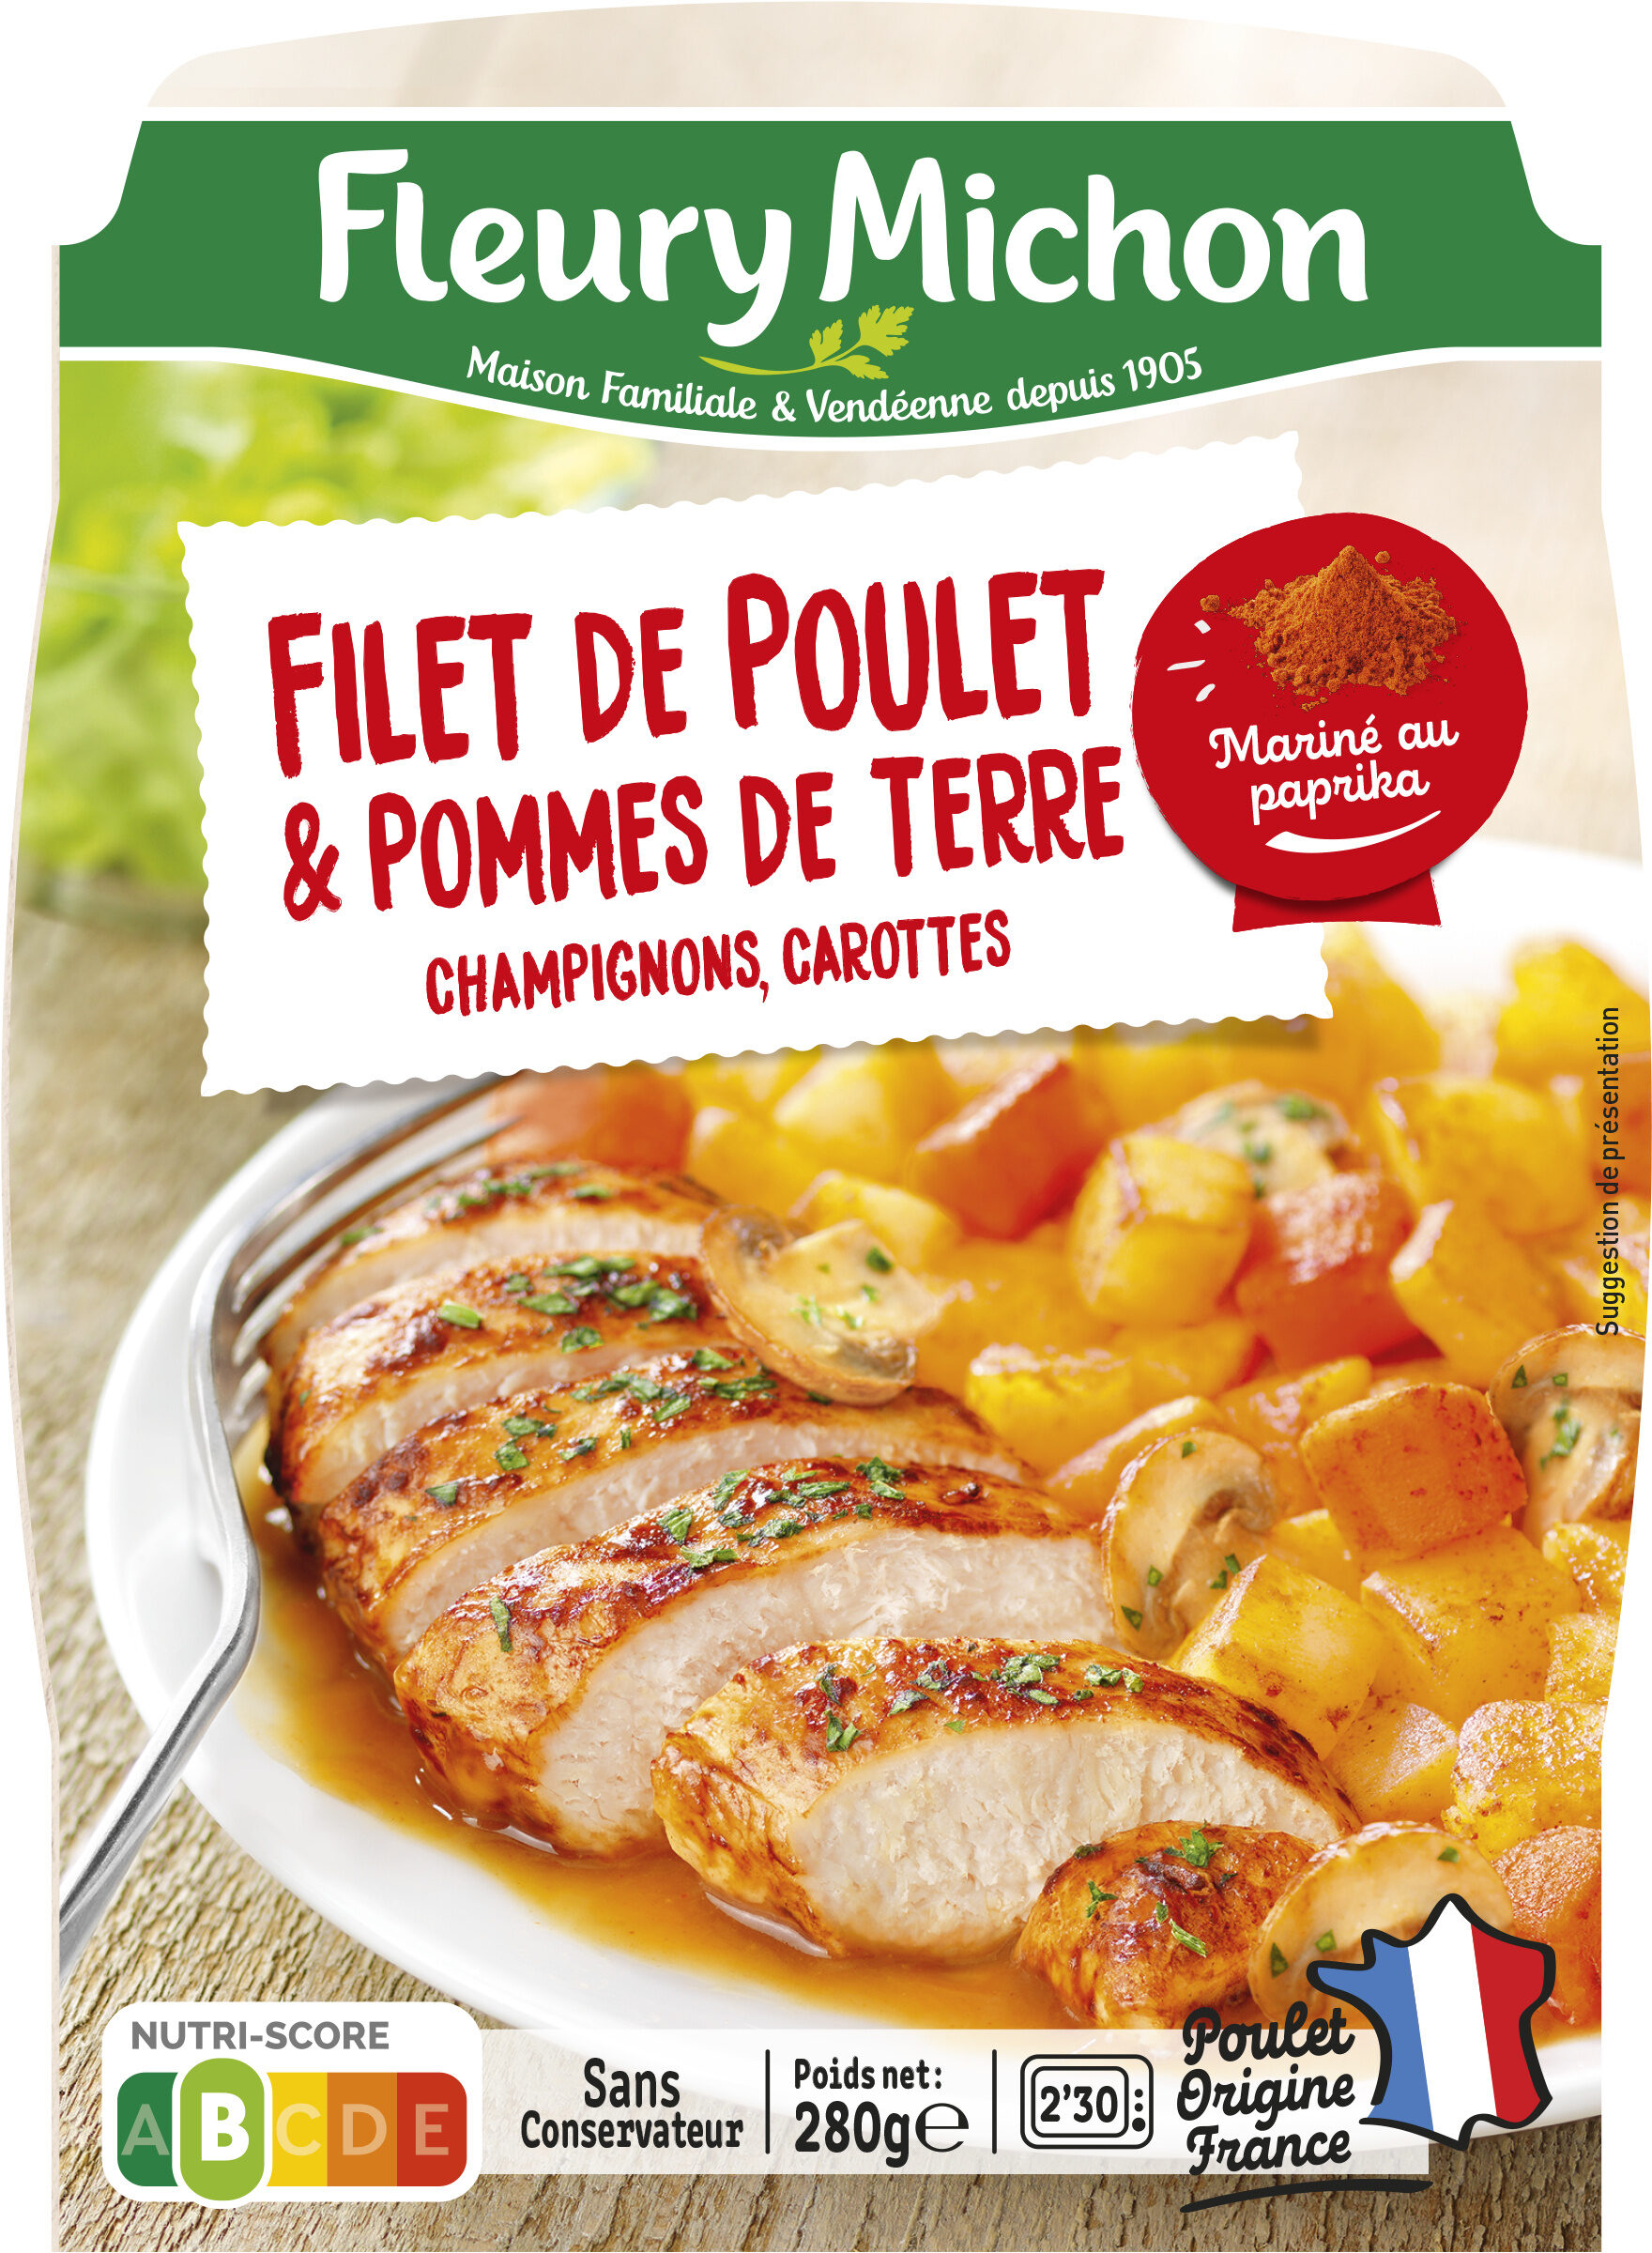 Filet de poulet & pommes de terre, champignons, carottes - Product - fr